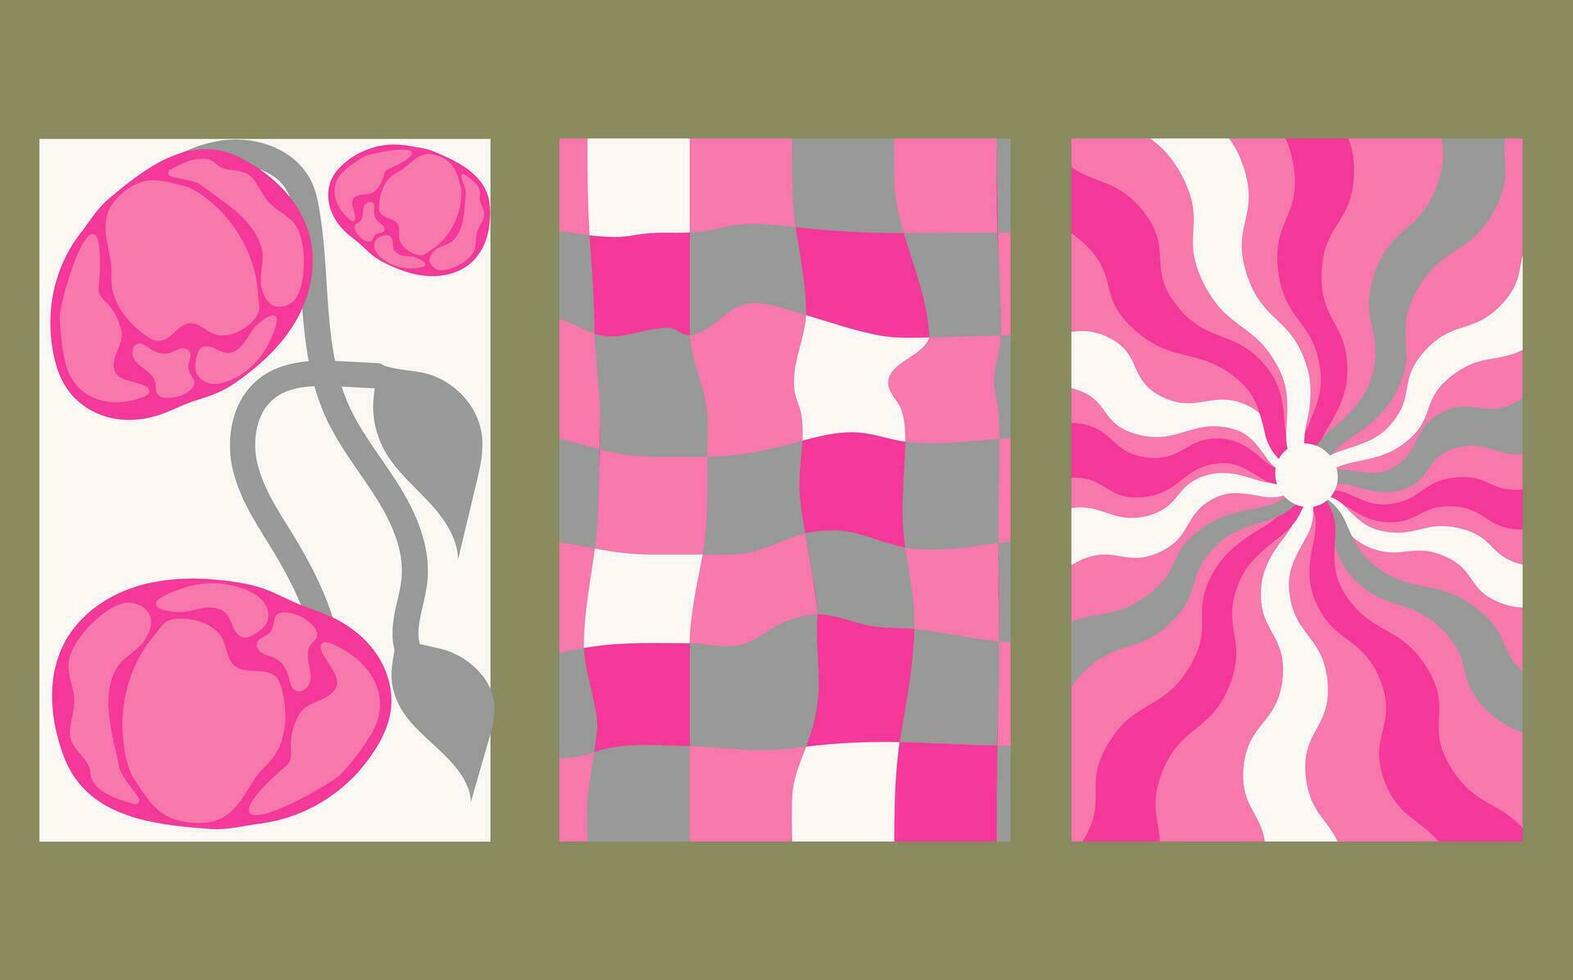 verzameling van retro schaakbord achtergronden met levendig tinten. een groovy en psychedelisch schaakbord patroon geïnspireerd door de Jaren 60 en jaren 70. vector